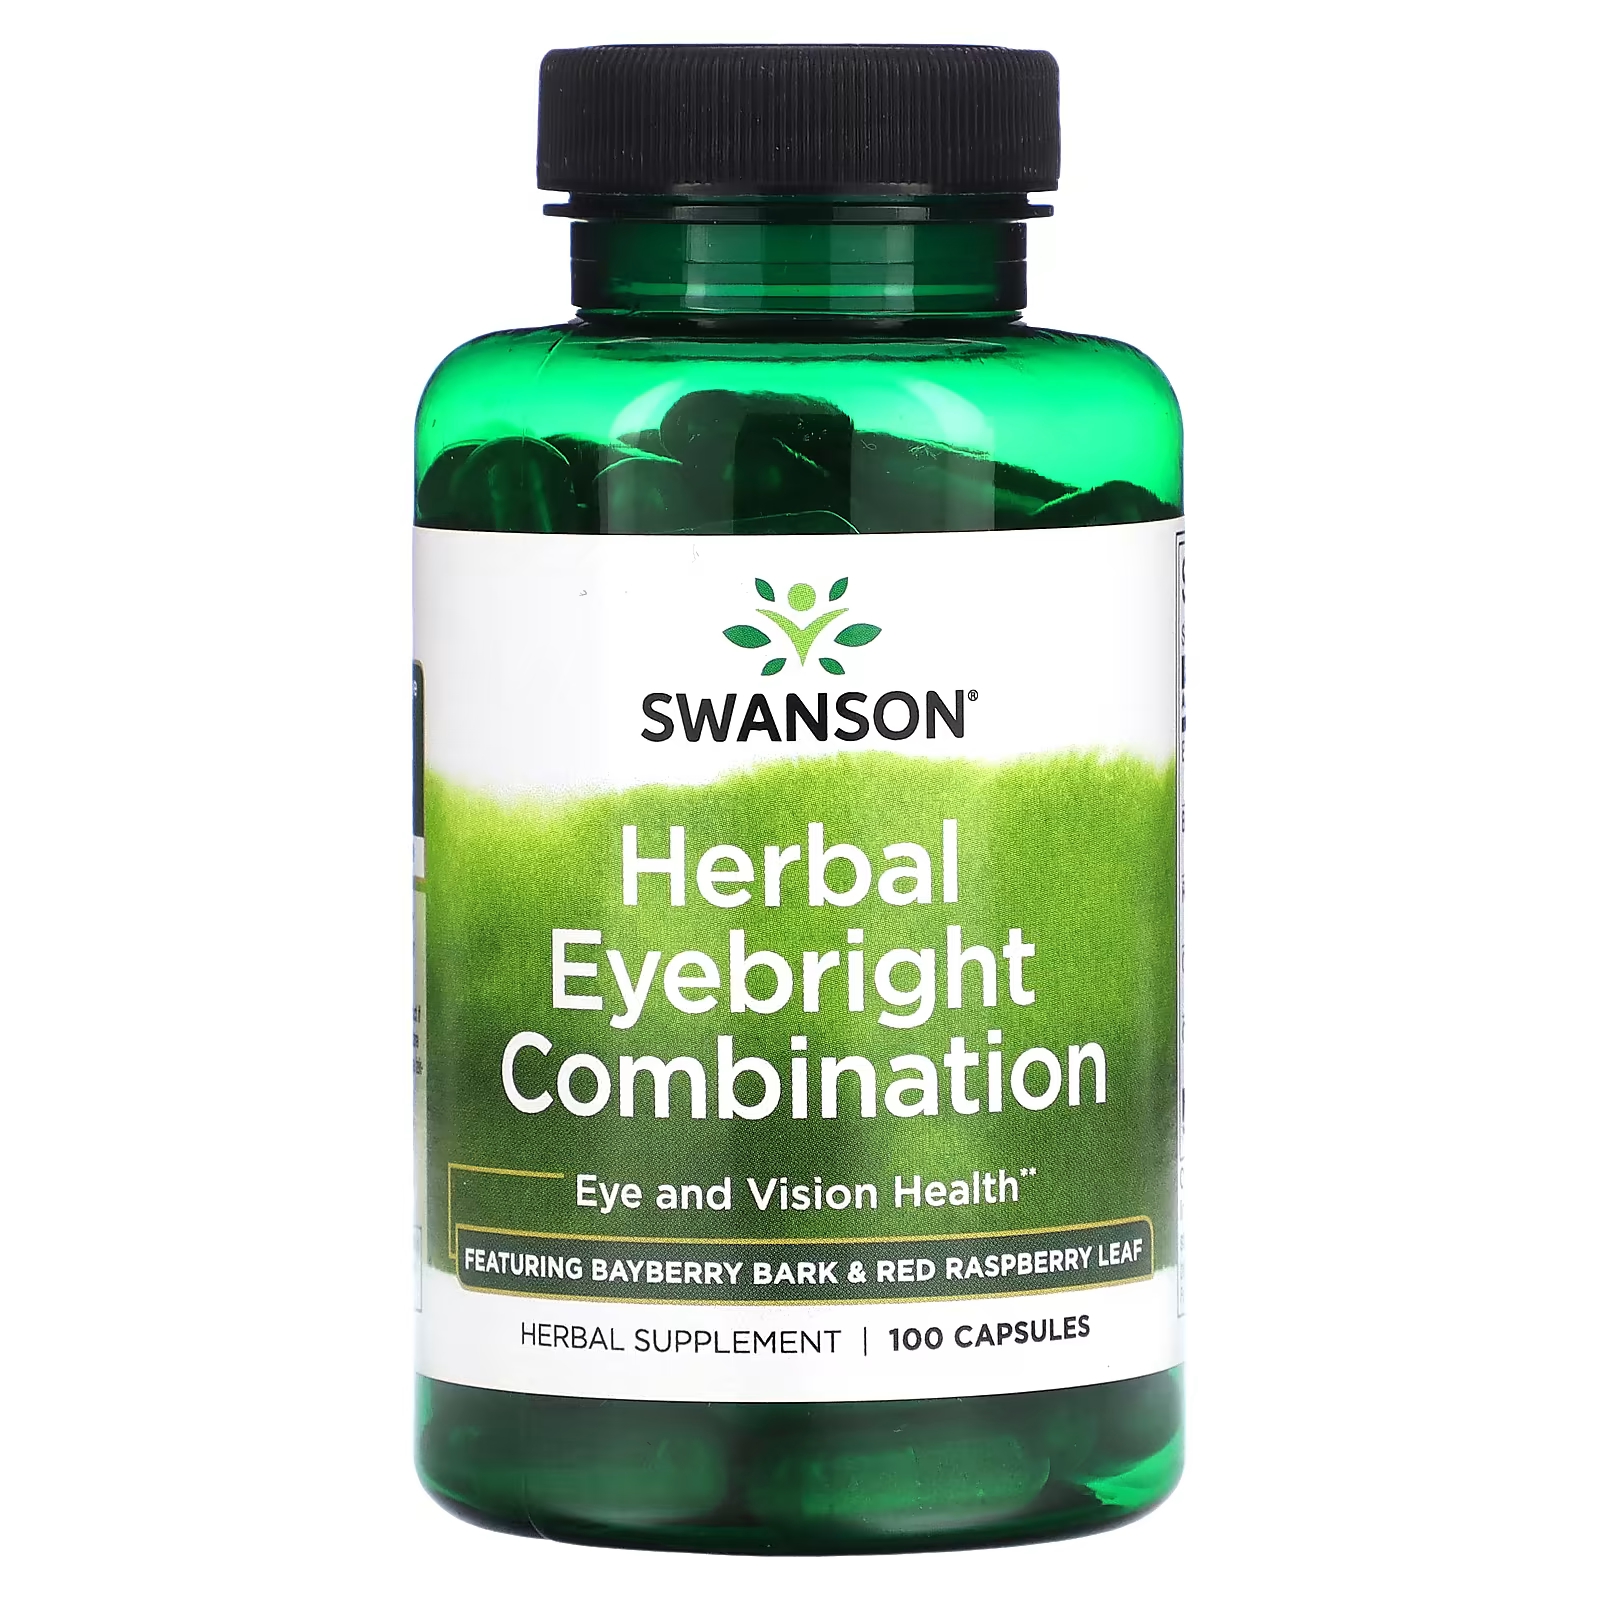 Травяная комбинация очанки Swanson, 100 капсул здоровье легких бронхов и носовых пазух 90 таблеток natural factors